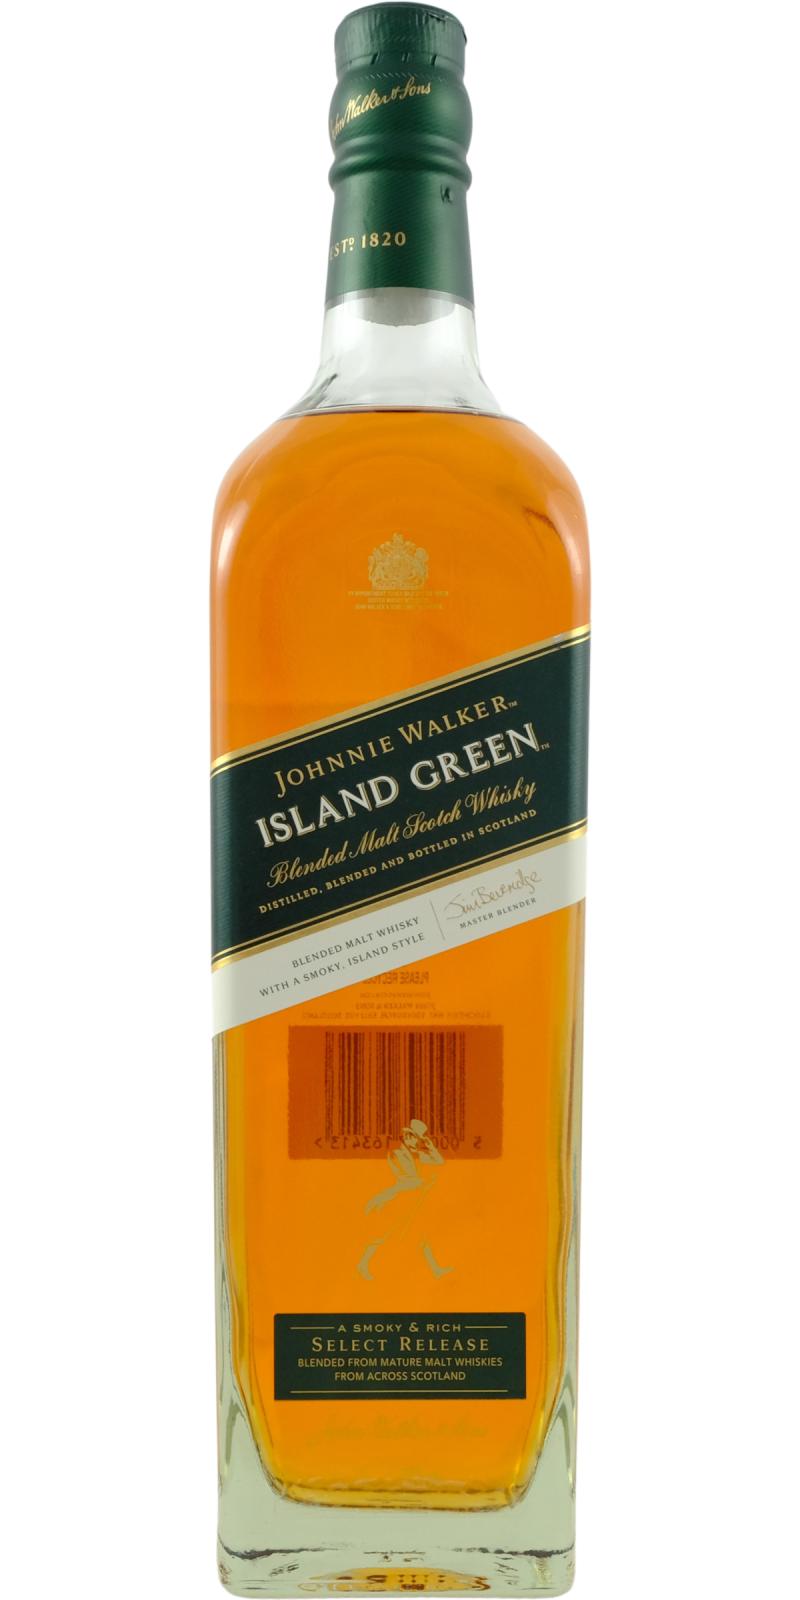 Johnnie Walker Island Green